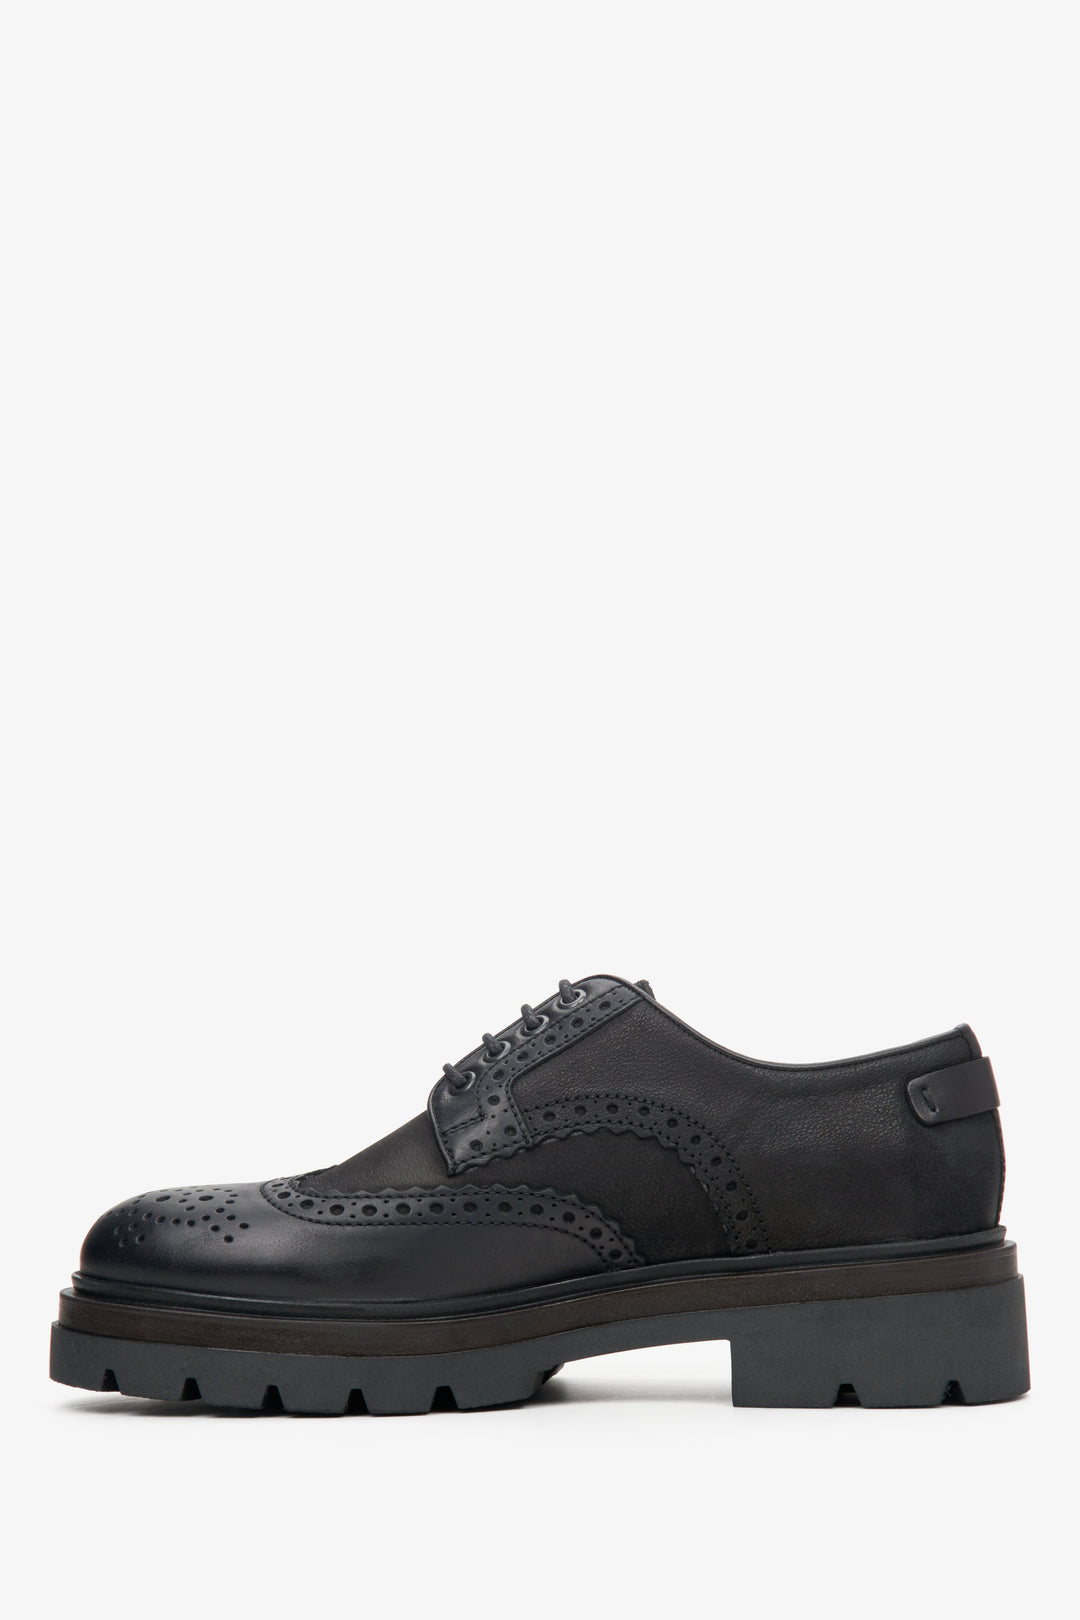 Men's black lace-up oxford shoes by Estro - shoe profile.